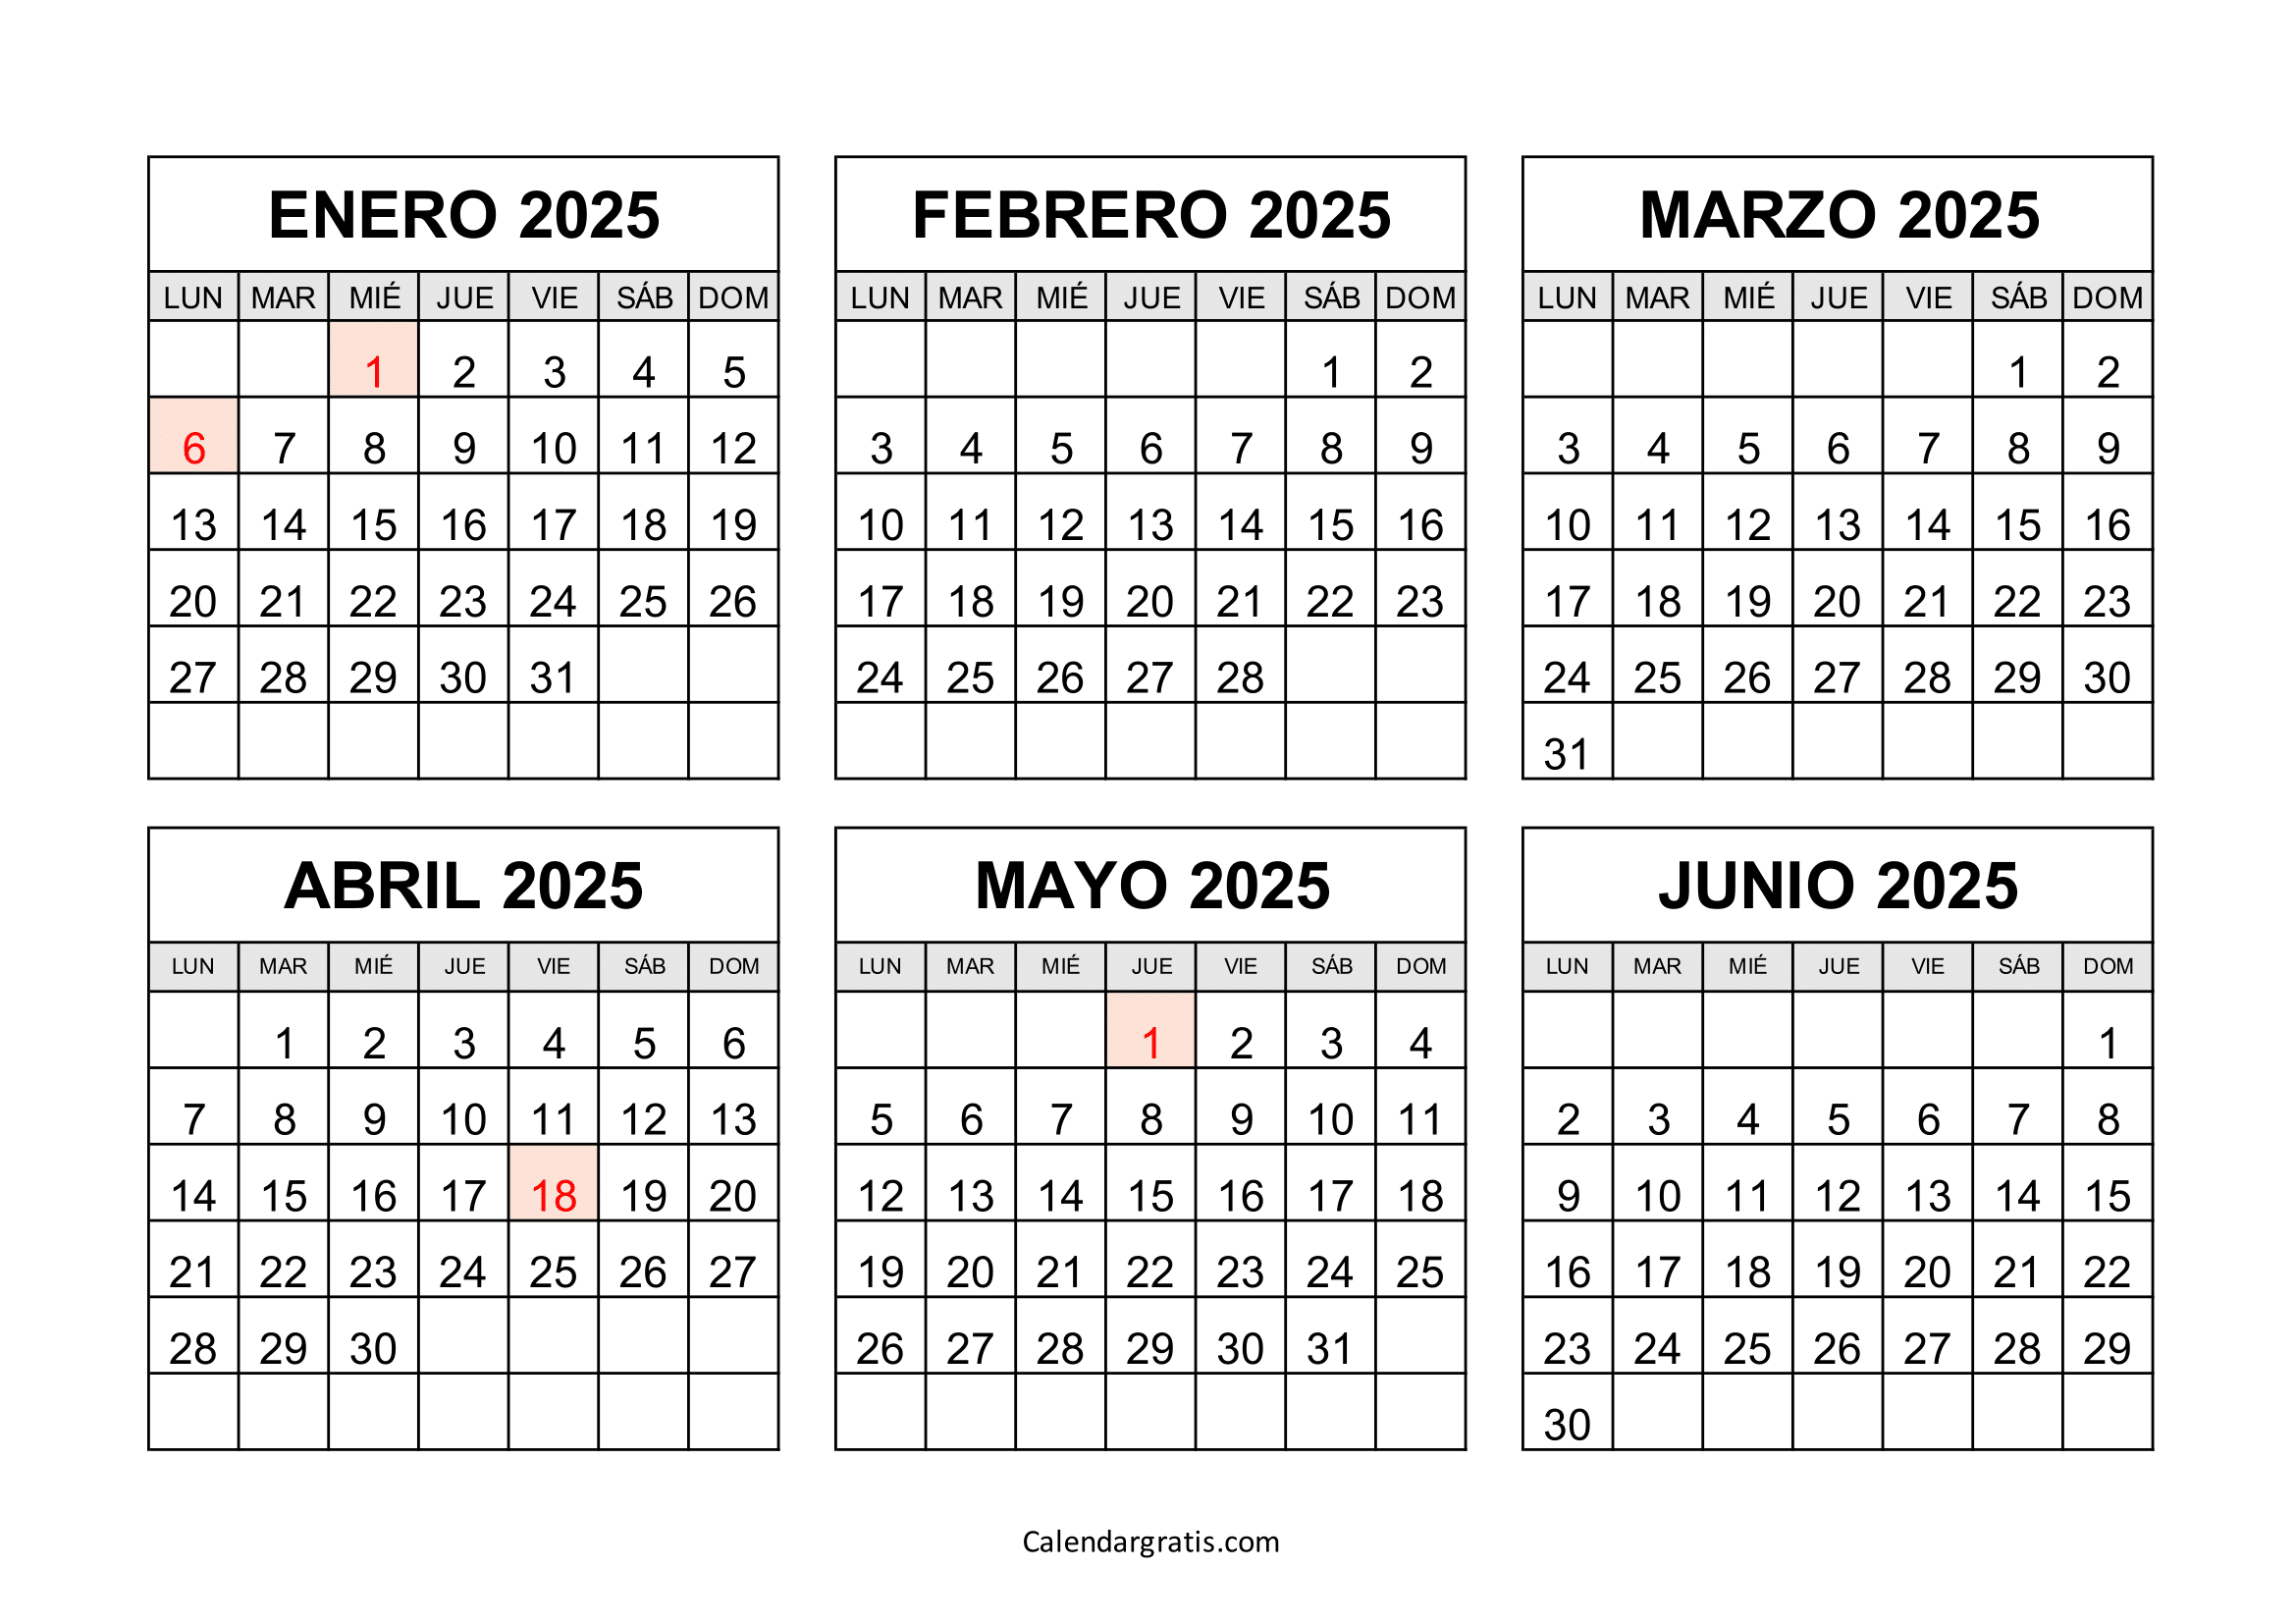 Calendario enero a junio 2025 México